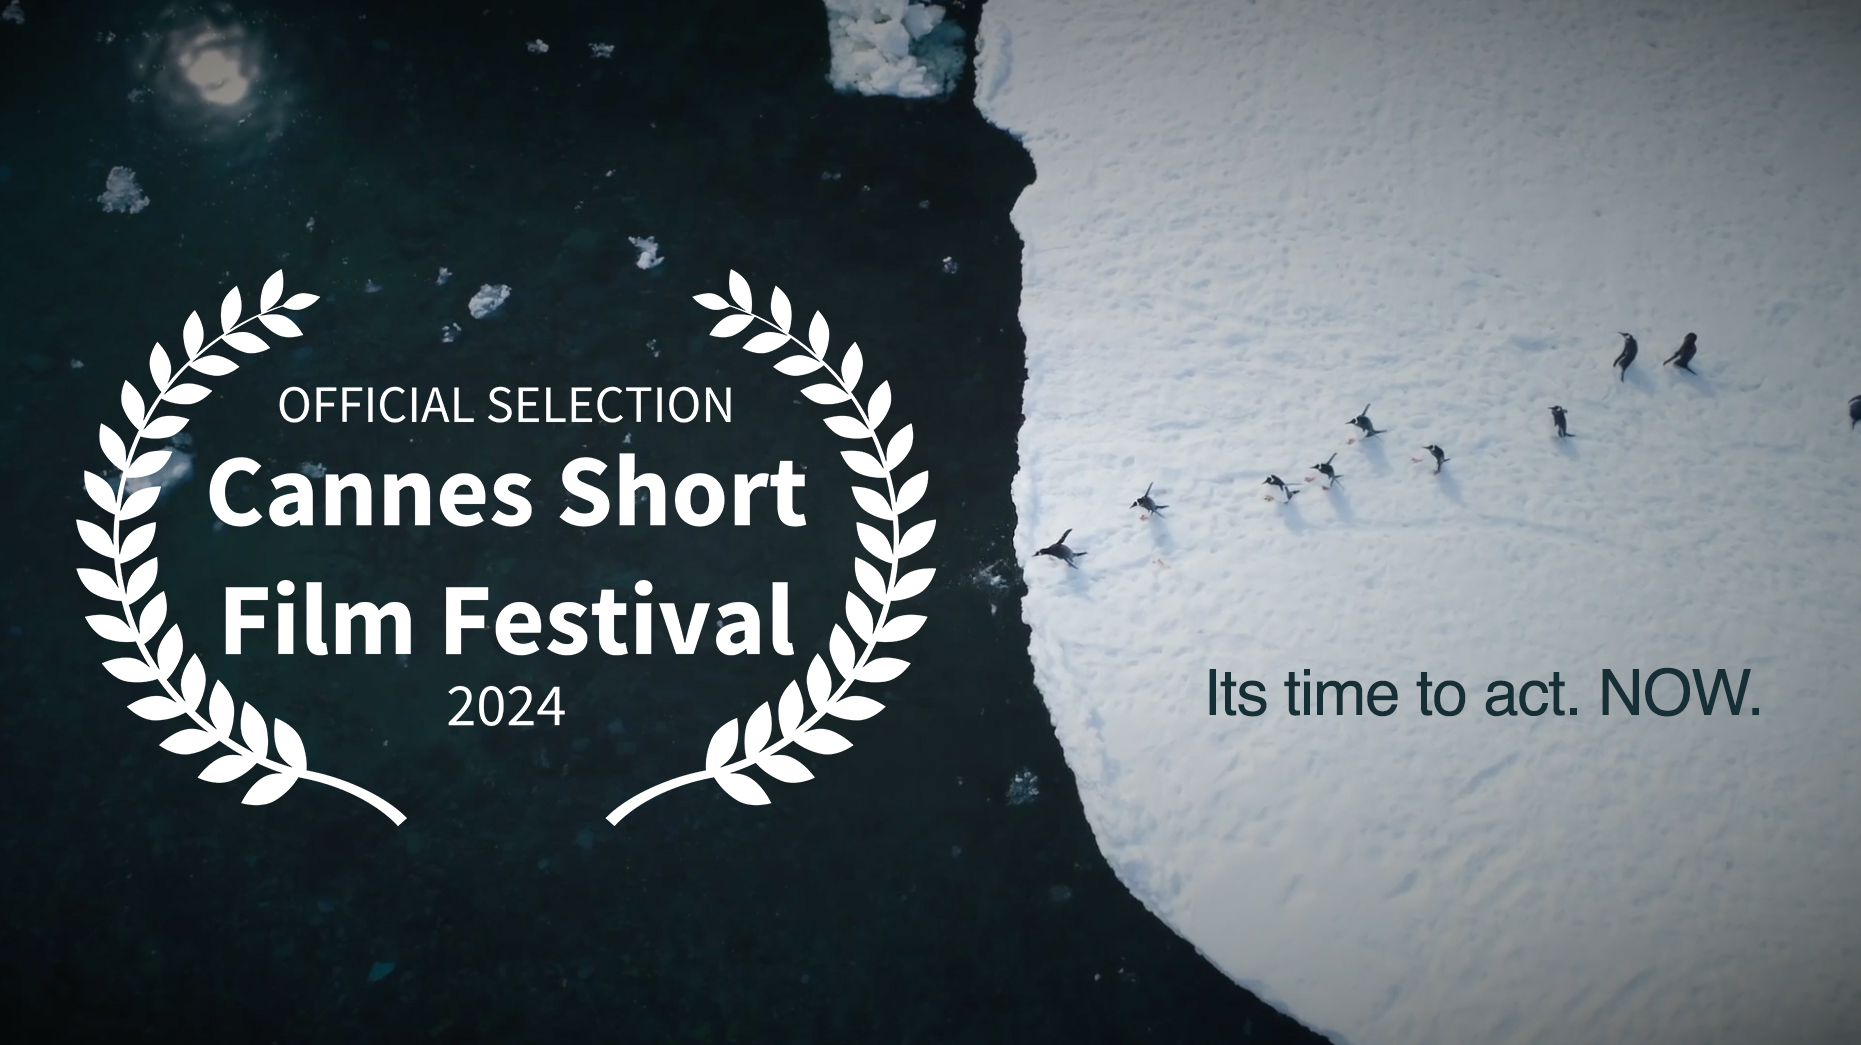 Cannes Short Film Festival